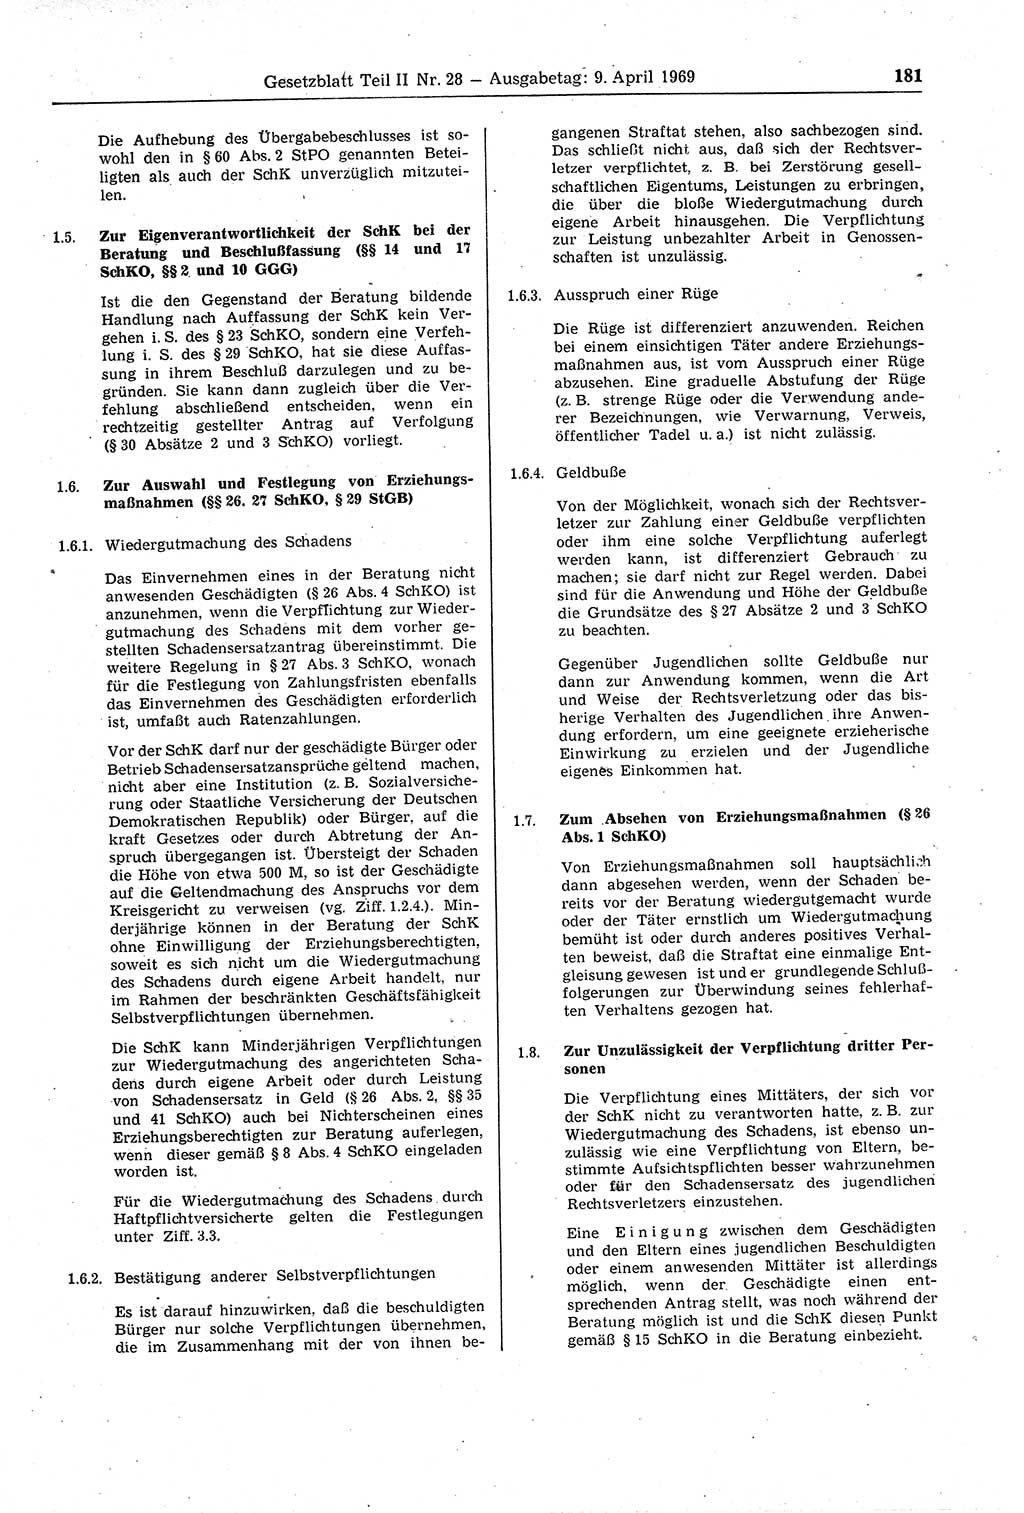 Gesetzblatt (GBl.) der Deutschen Demokratischen Republik (DDR) Teil ⅠⅠ 1969, Seite 181 (GBl. DDR ⅠⅠ 1969, S. 181)